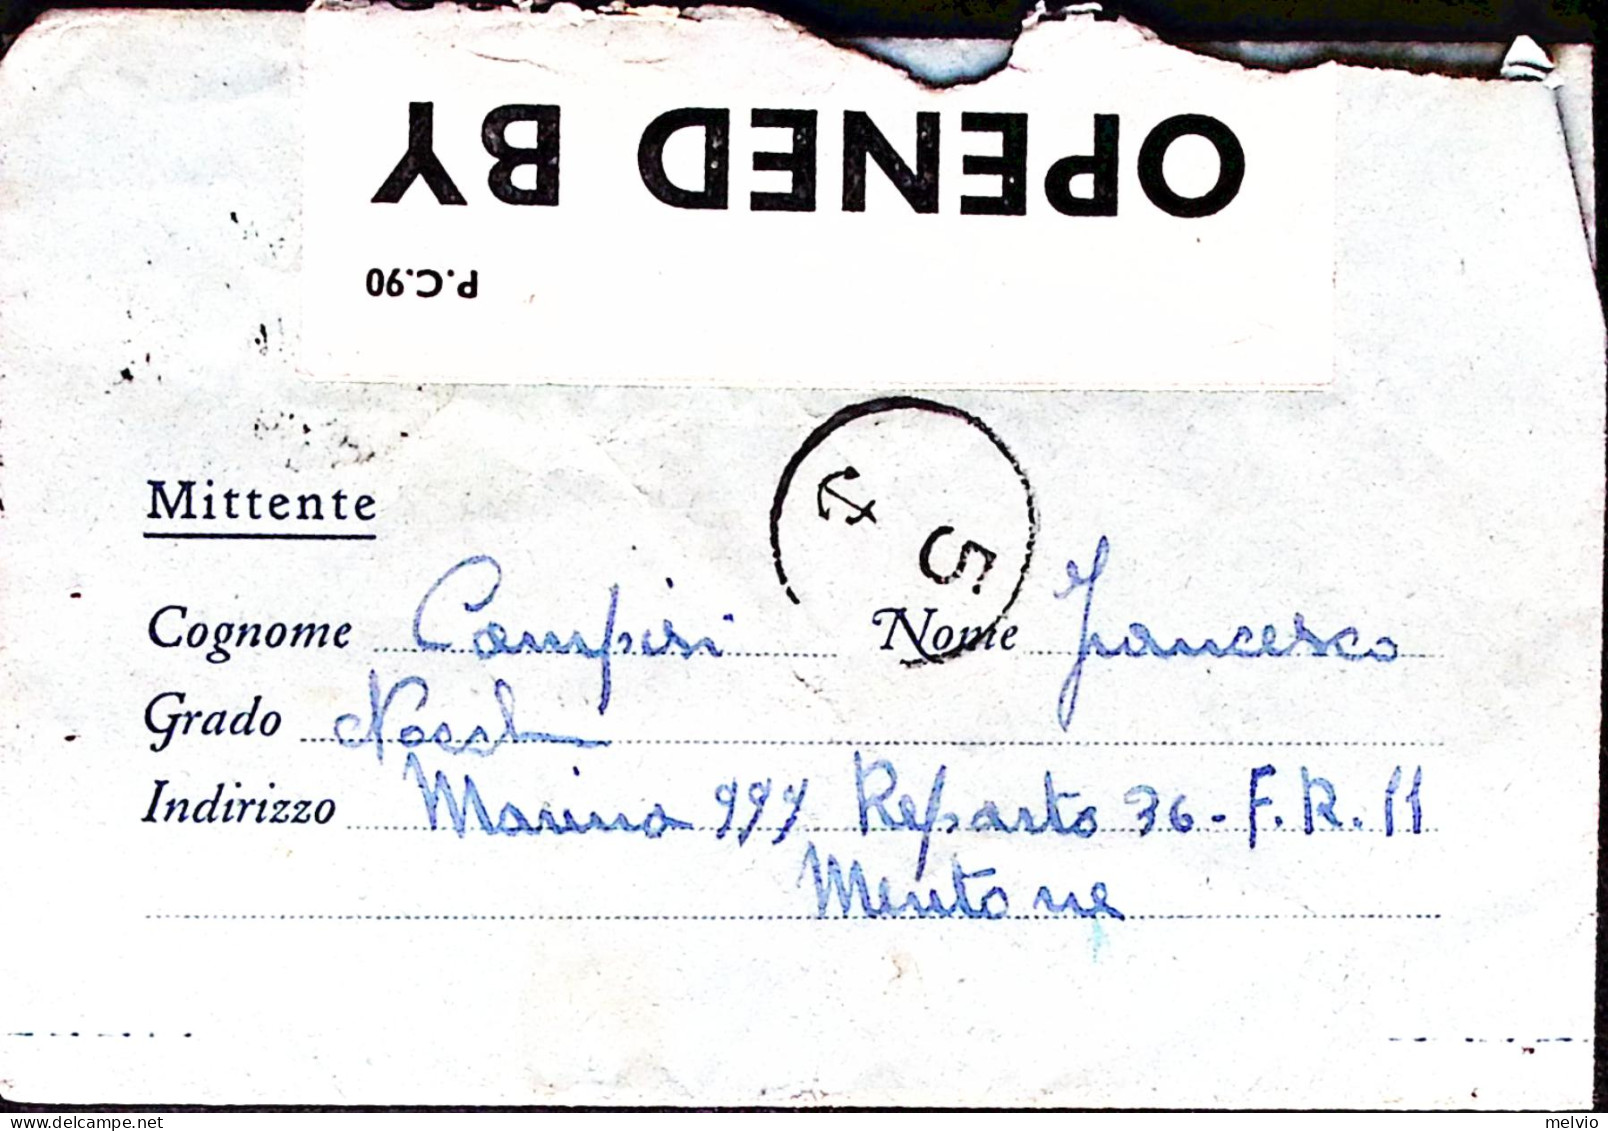 1943-Marina 999 Reparto 36 F.R. 11 Mentone Al Verso Di Biglietto Franchigia Data - Marcophilia